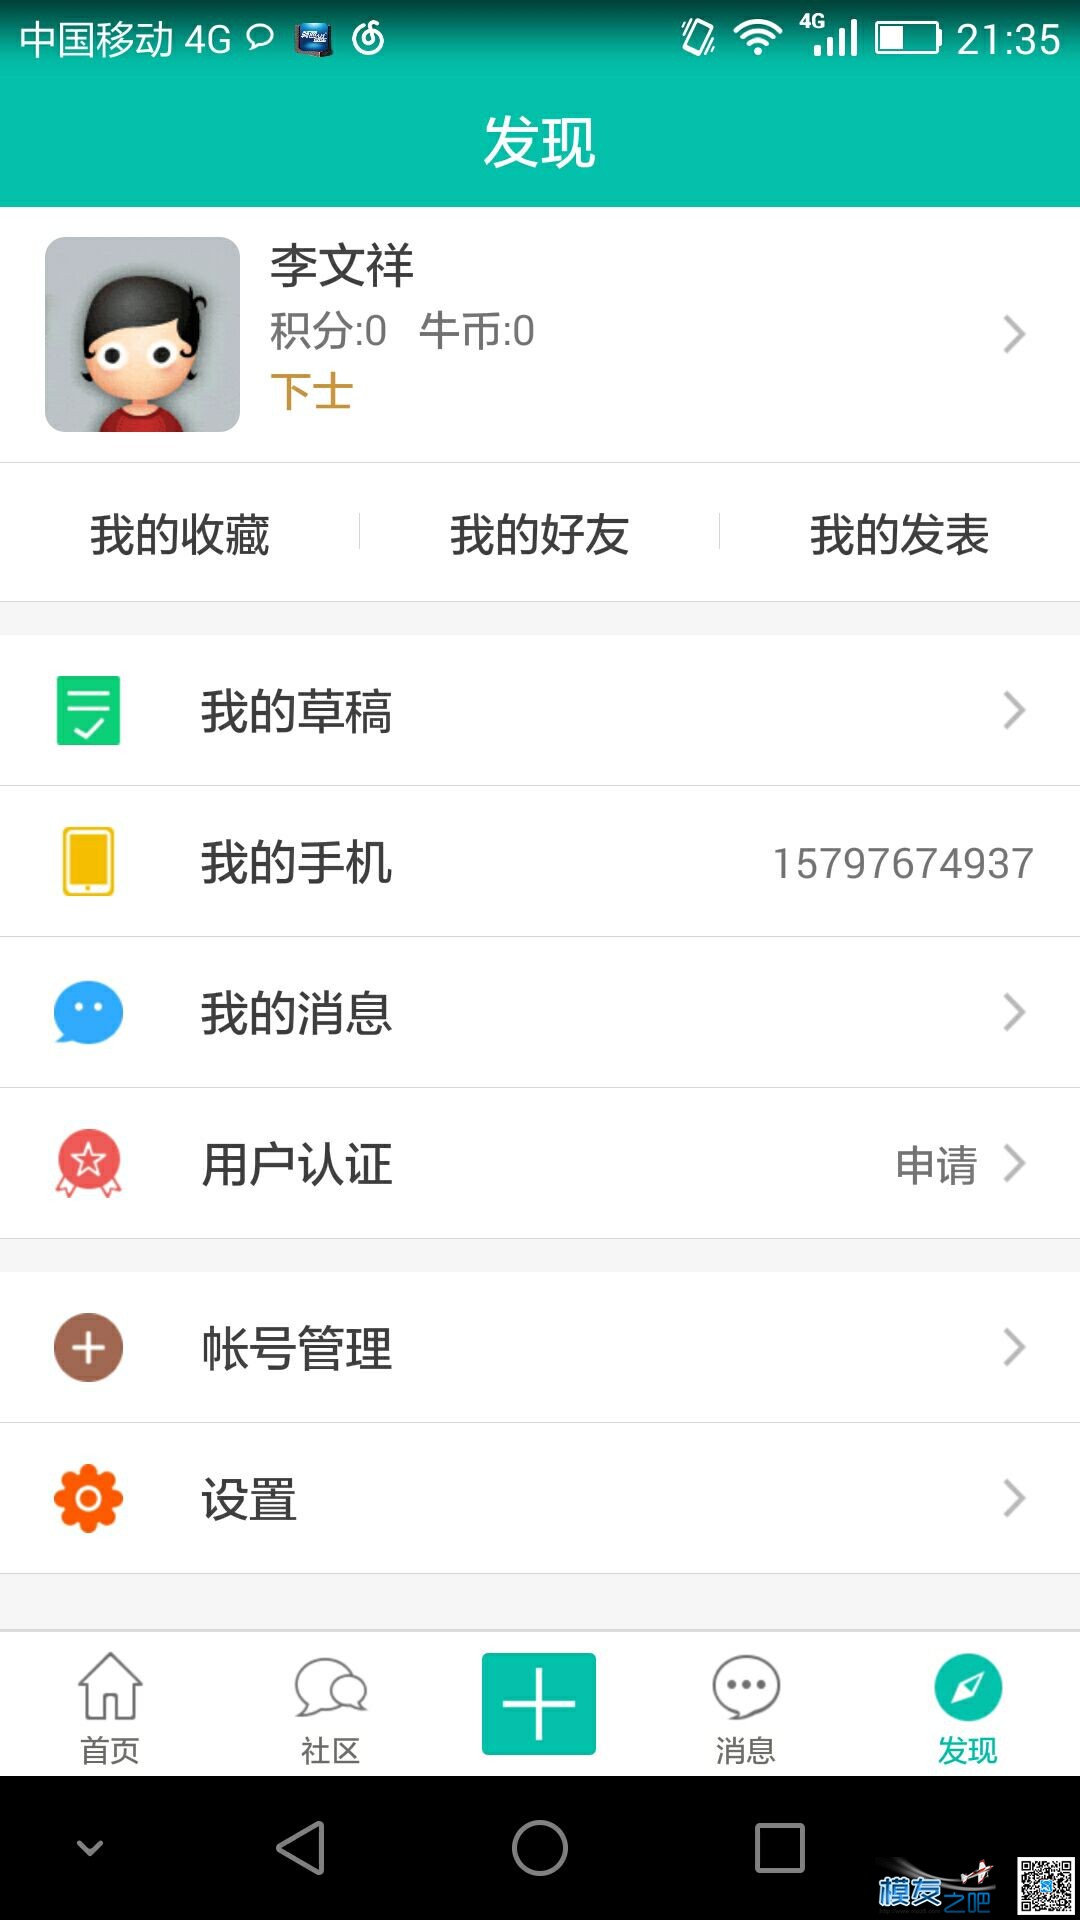 【模友之吧】100个aomway5.8G-500mw图传用于论坛推广！  作者:zhangyiyun2014 4207 